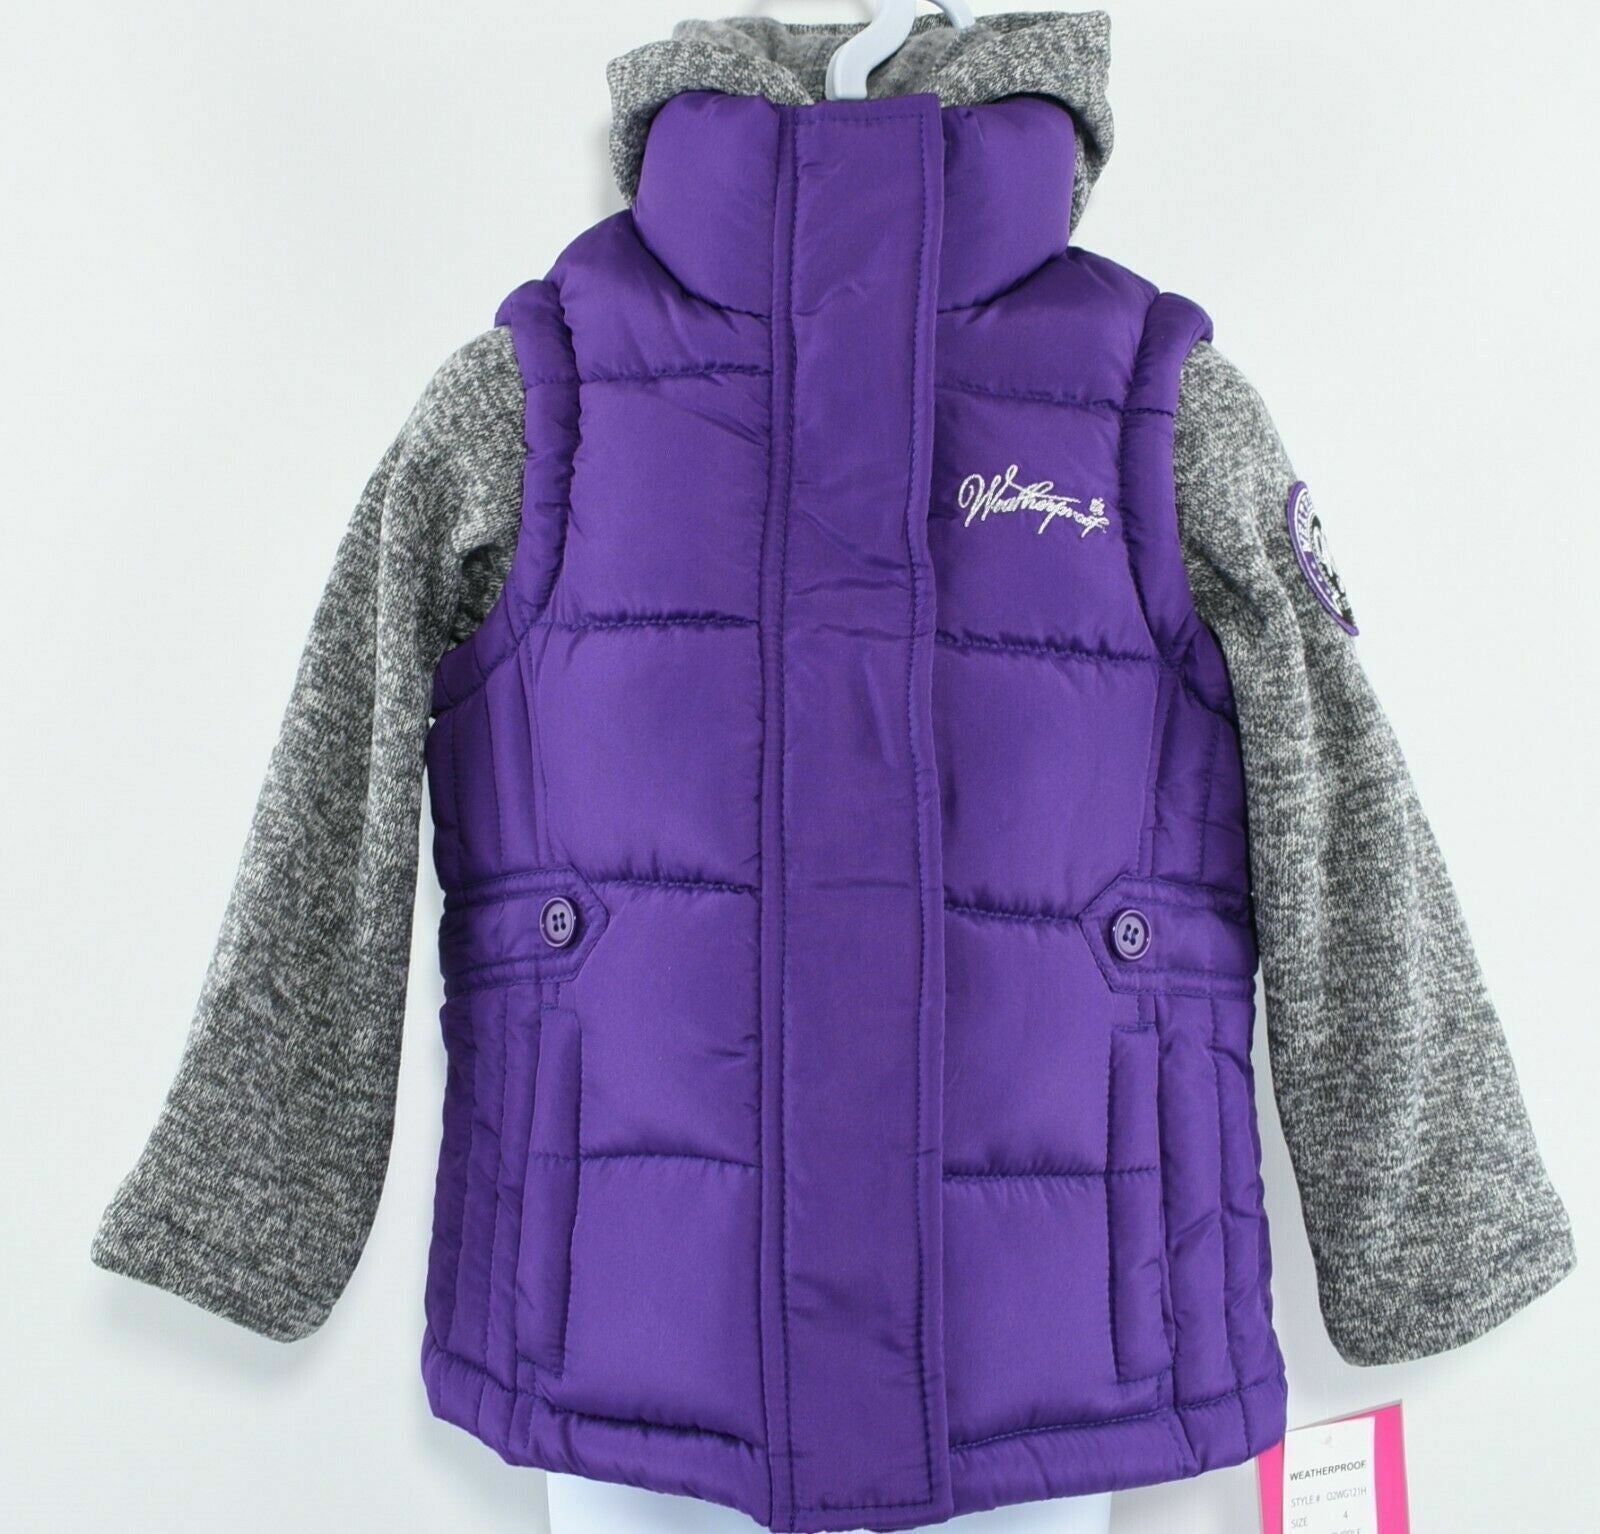 WEATHERPROOF Girls' Kids' Gilet Bodywarmer Jacket, Purple/Grey, size 4 years